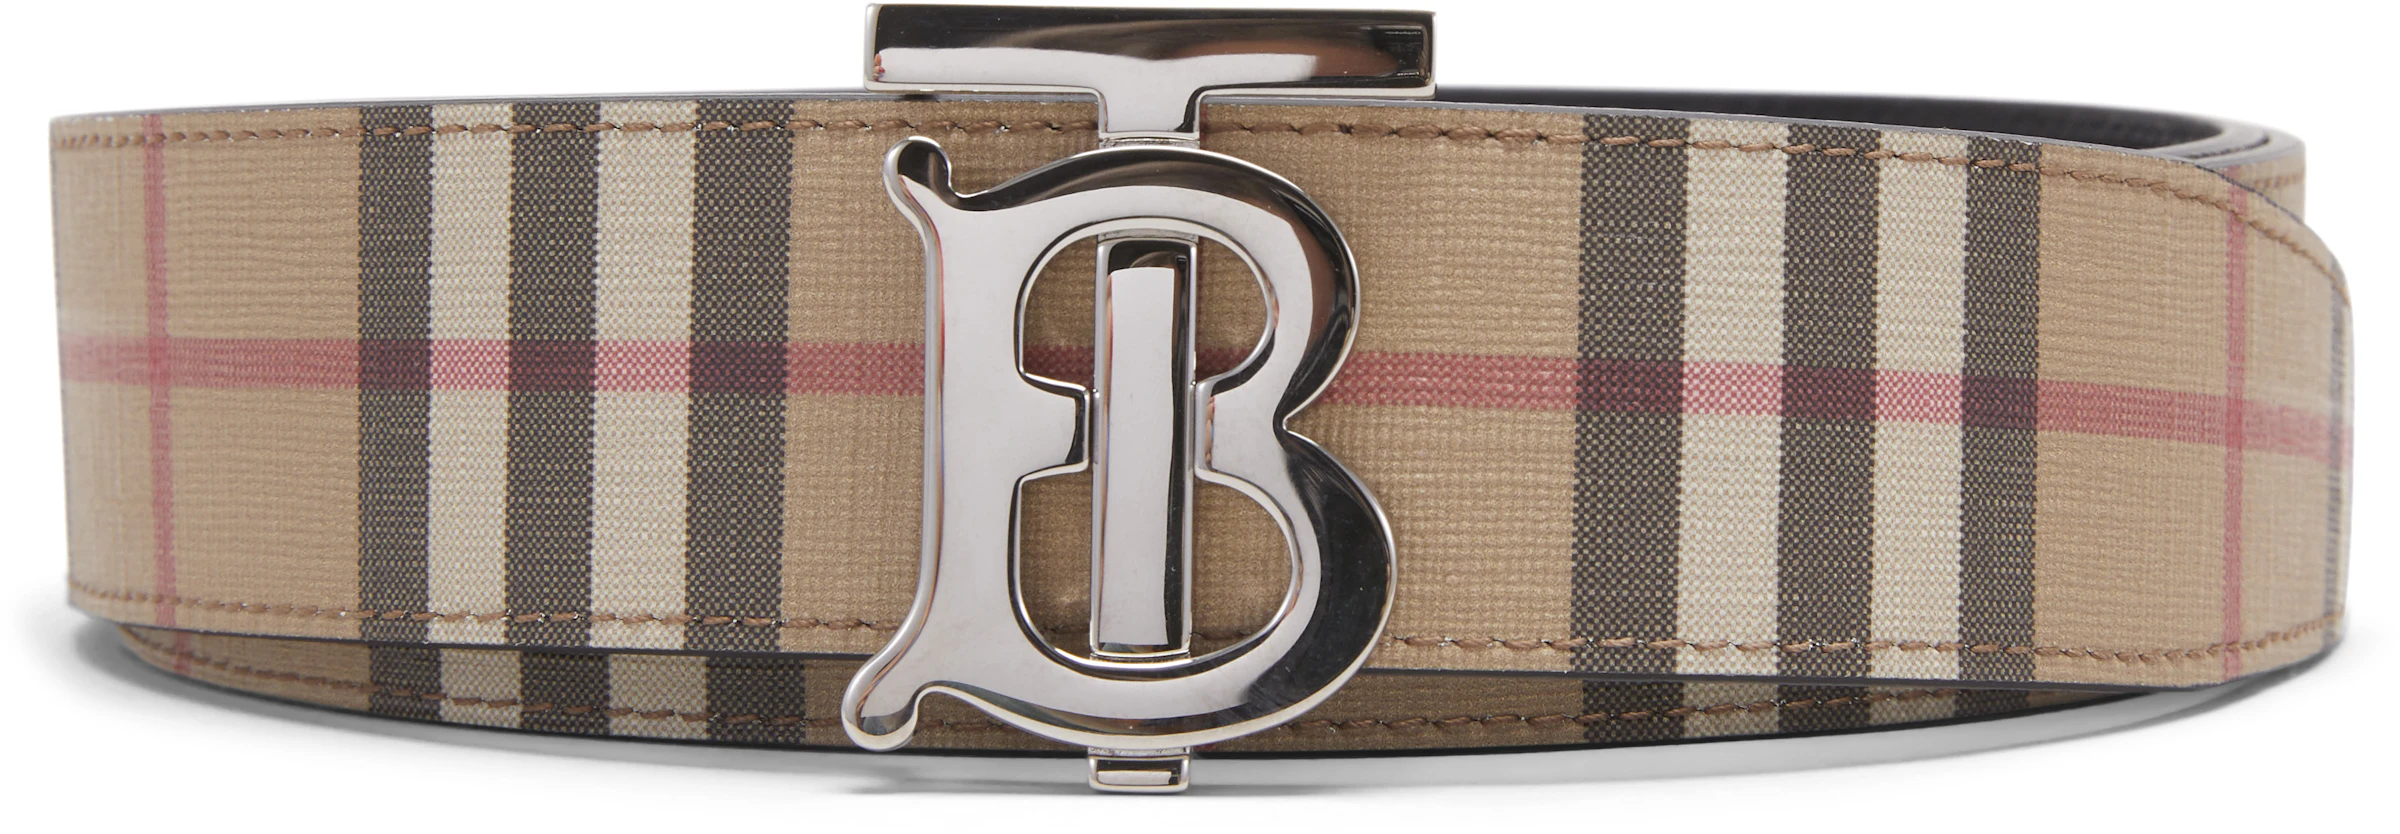 Buy Burberry Belt Accessories - StockX